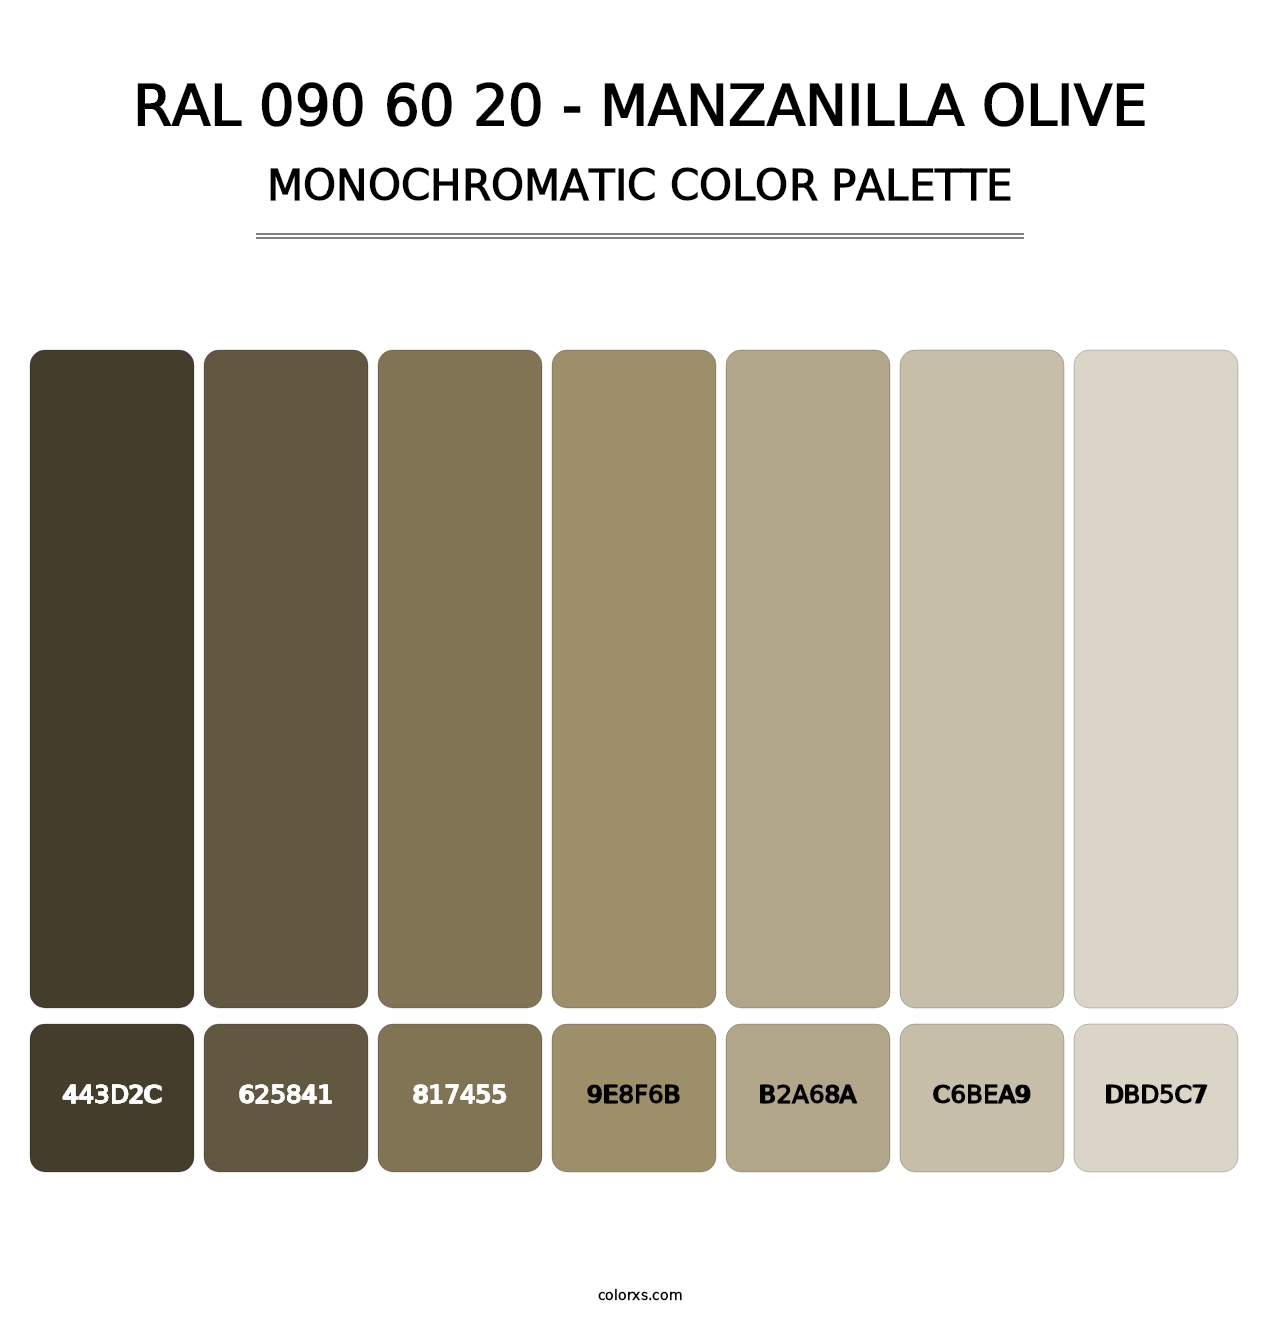 RAL 090 60 20 - Manzanilla Olive - Monochromatic Color Palette